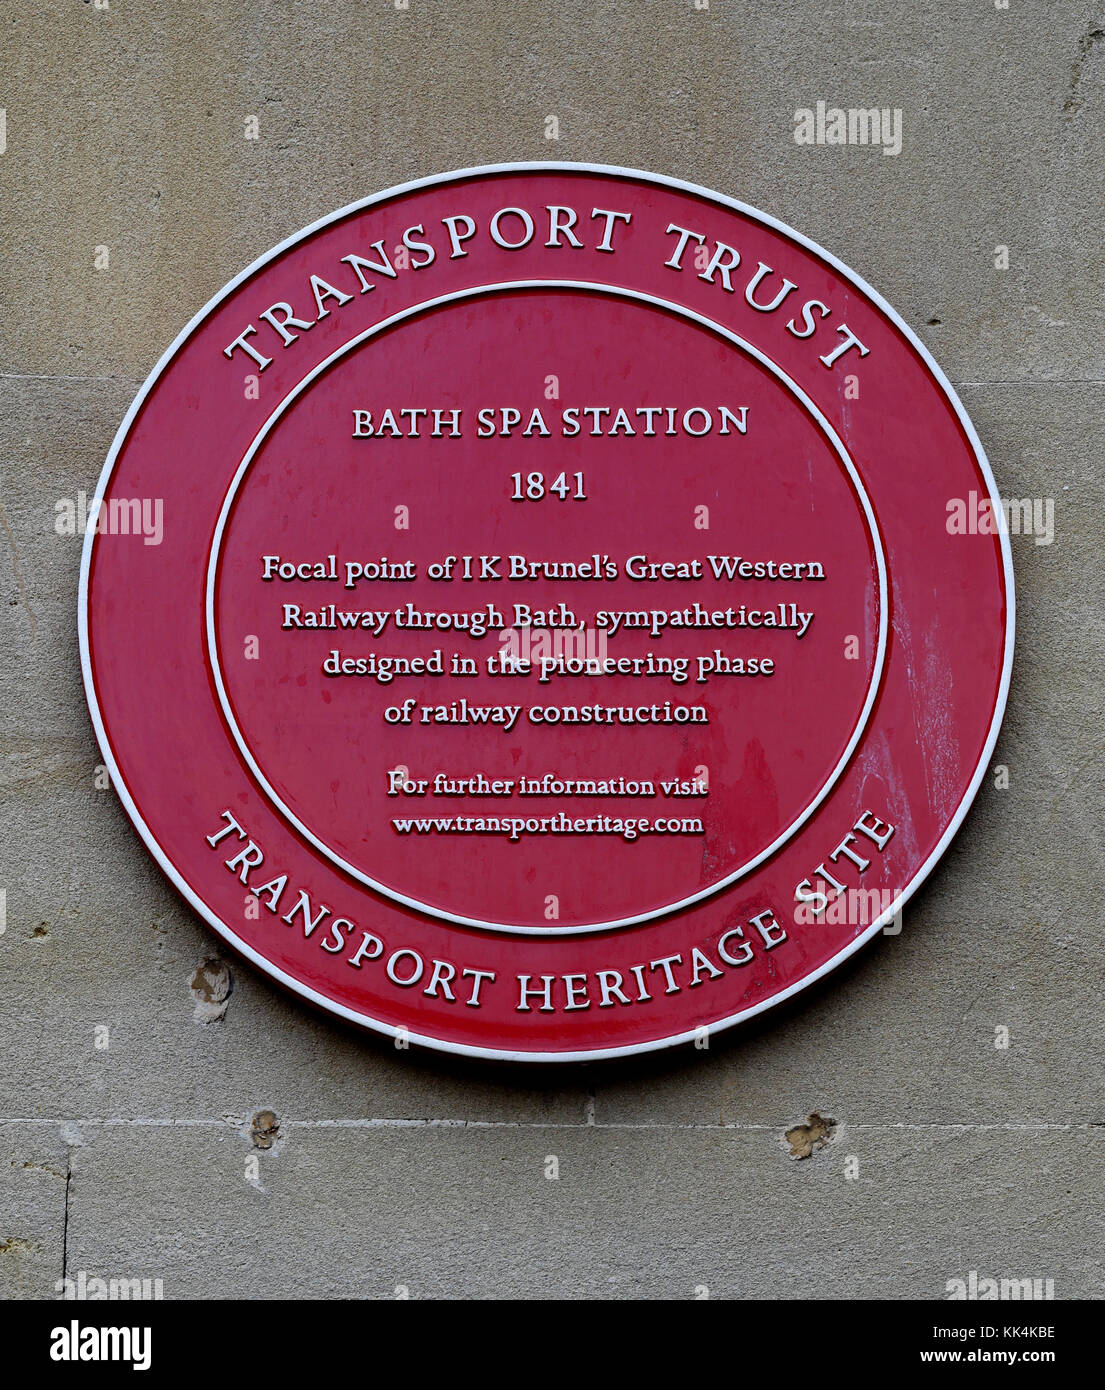 La plaque rouge du patrimoine - Transports Site du patrimoine mondial - à la gare de Bath Spa construit en 1841, baignoire, Avon, England, UK Banque D'Images